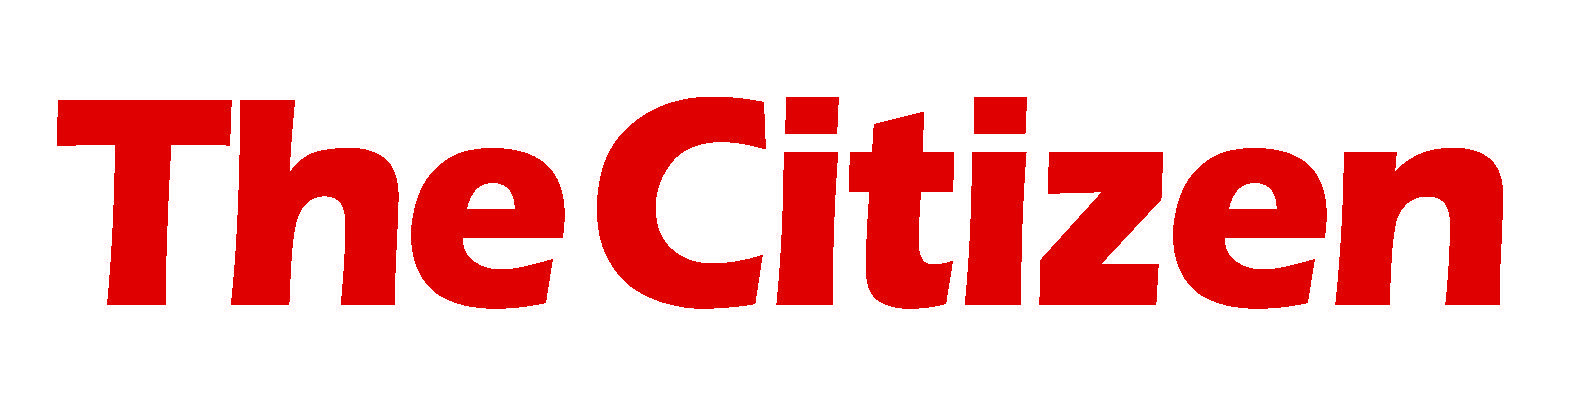 Citizen Logo - THE CITIZEN logo